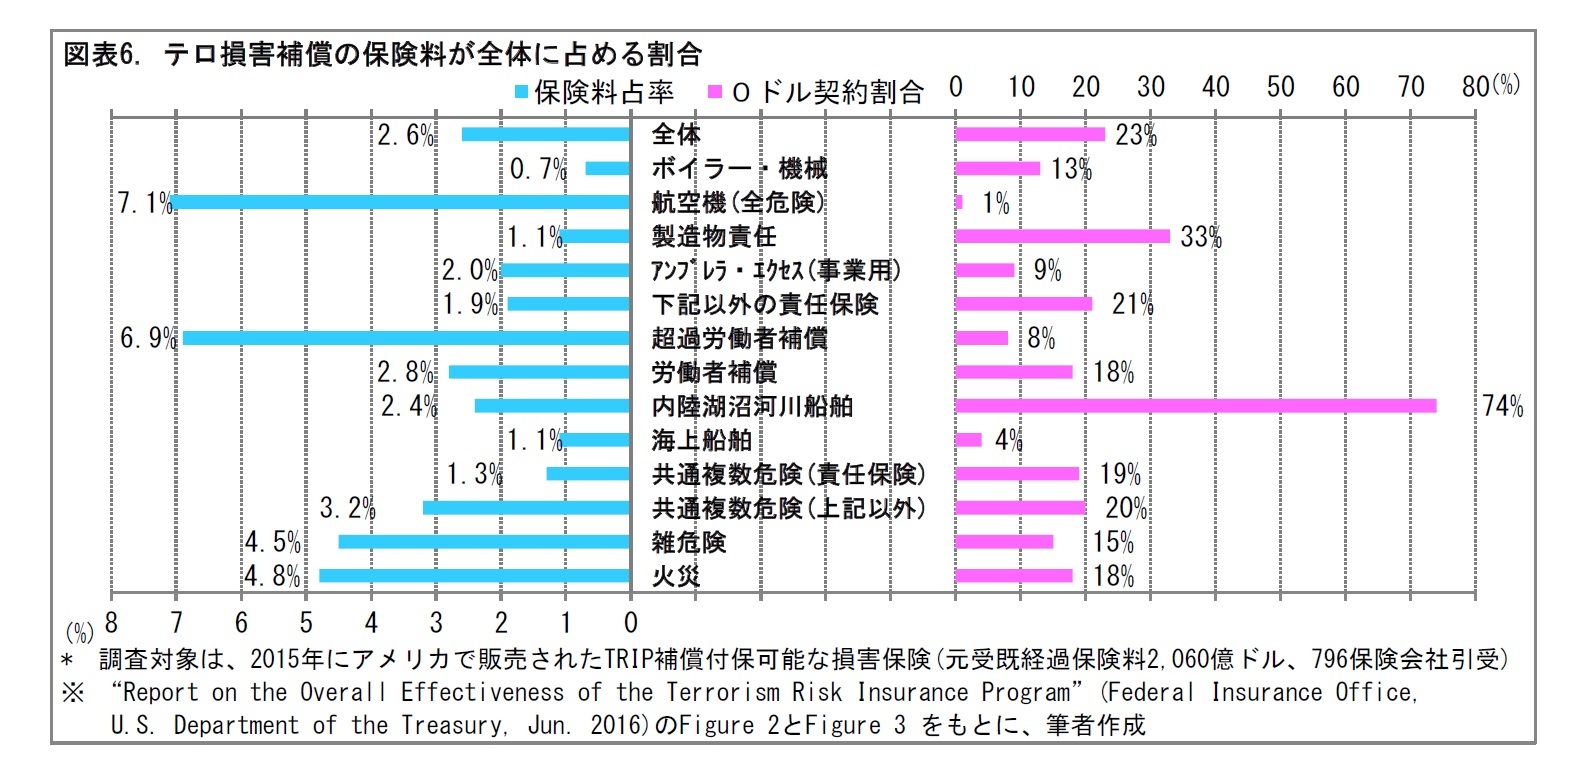 図表6. テロ損害補償の保険料が全体に占める割合